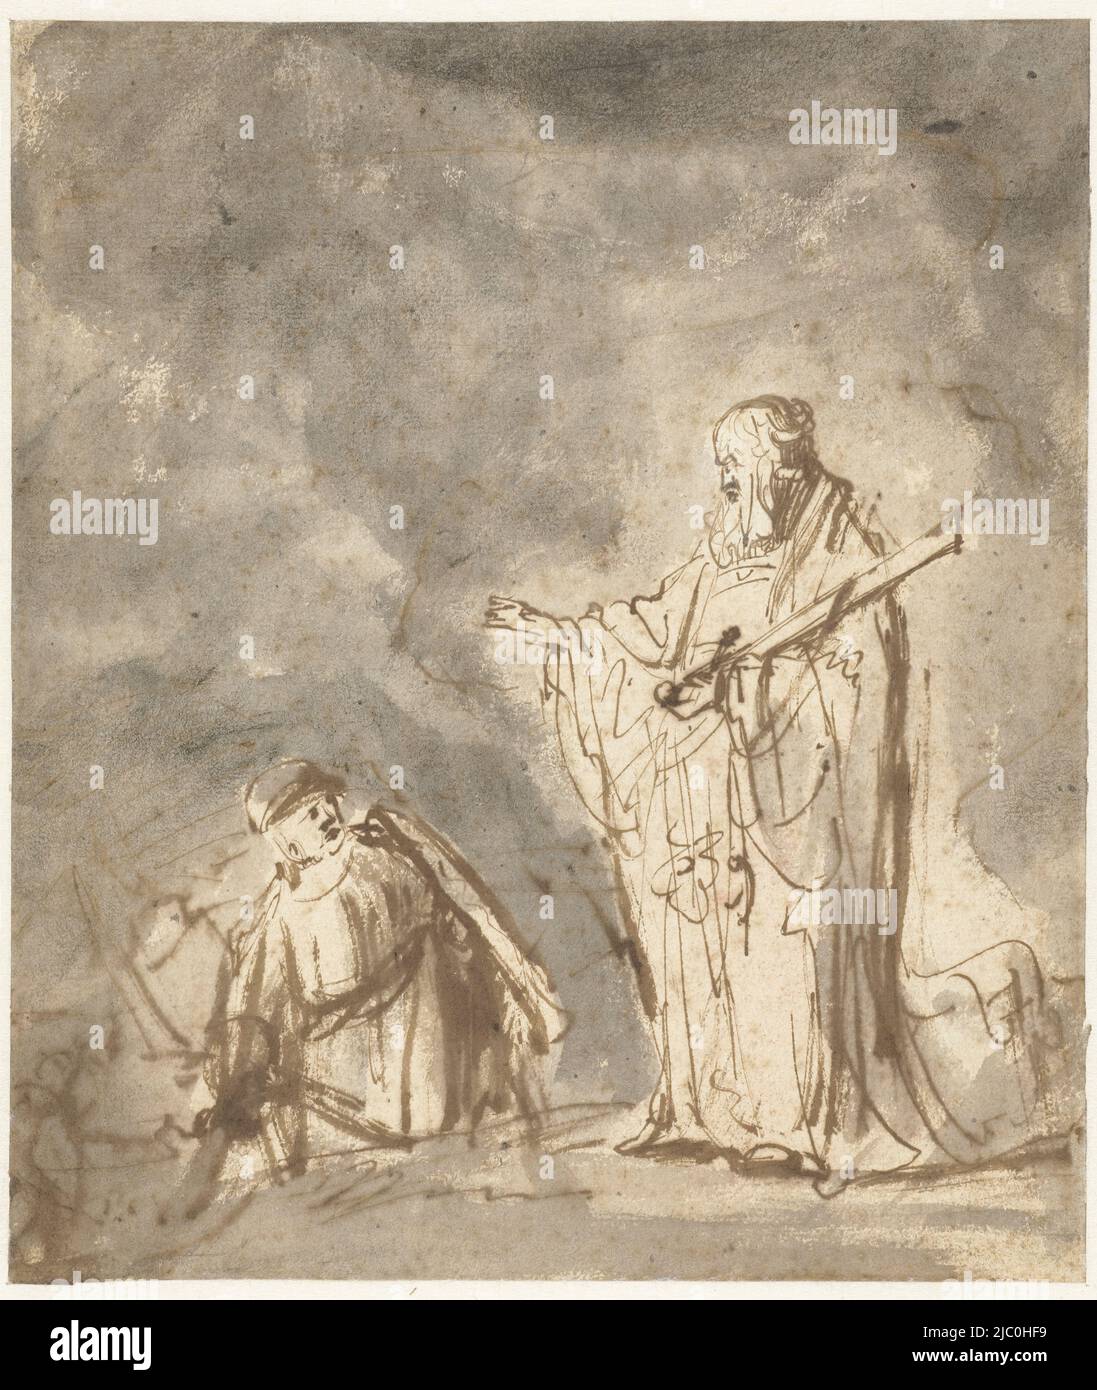 Le messager de Dieu apparaît à Josué, rapporteur: Ferdinand bol, 1640 - 1645, papier, stylo, brosse, h 214 mm × l 182 mm Banque D'Images